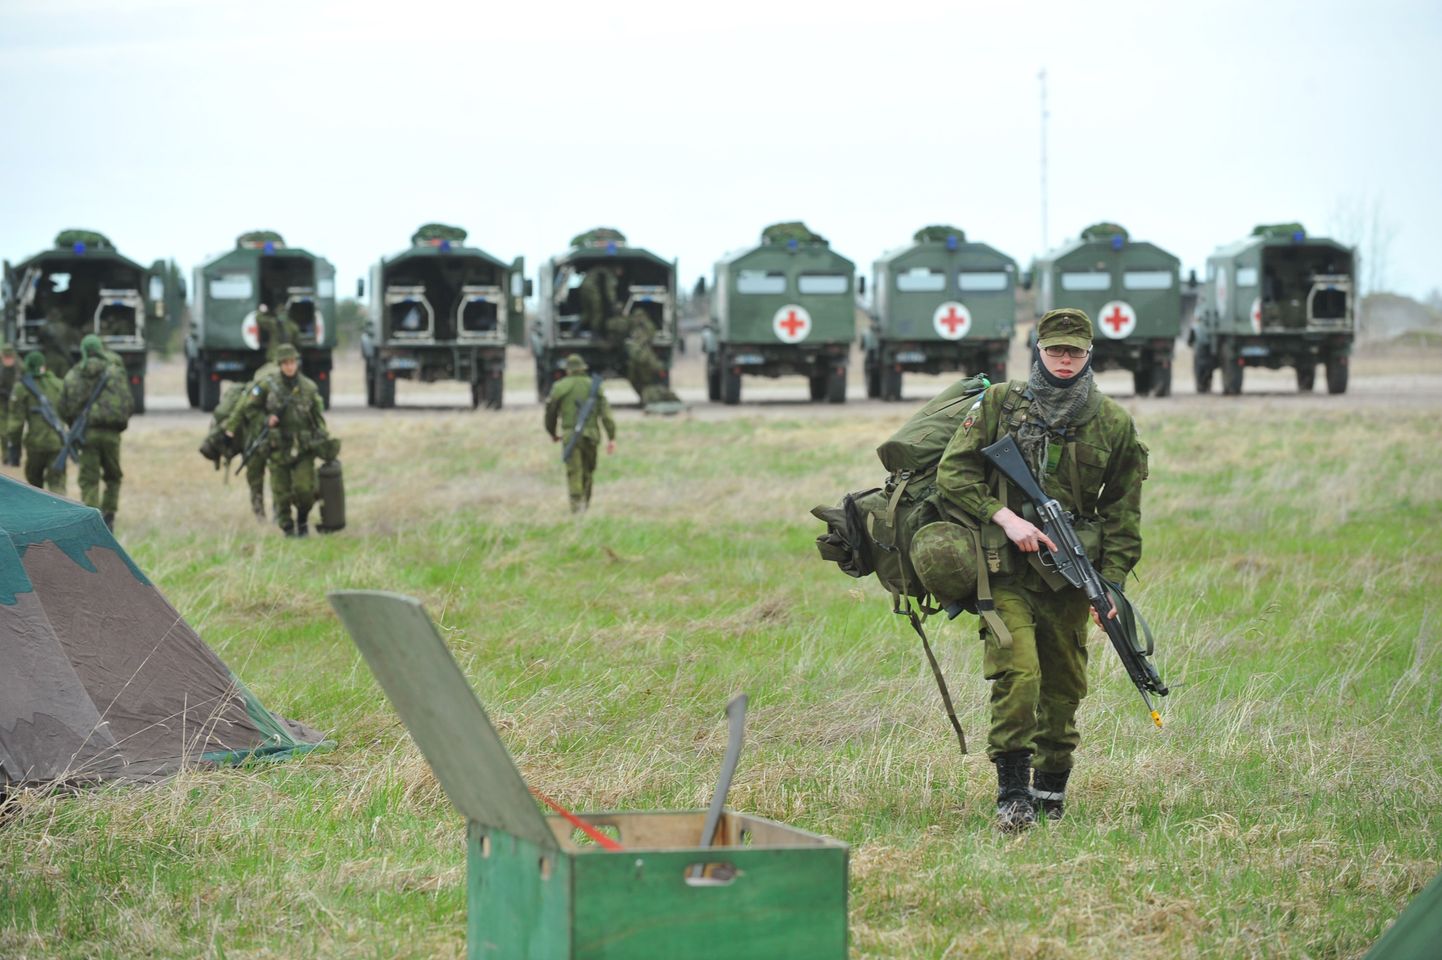 Lääne- ja Ida-Virumaal toimub kaitseväe suurim maaväeõppus Kevadtorm 2012. Sõdurid kogunevad Tapa vanal lennuväljal.